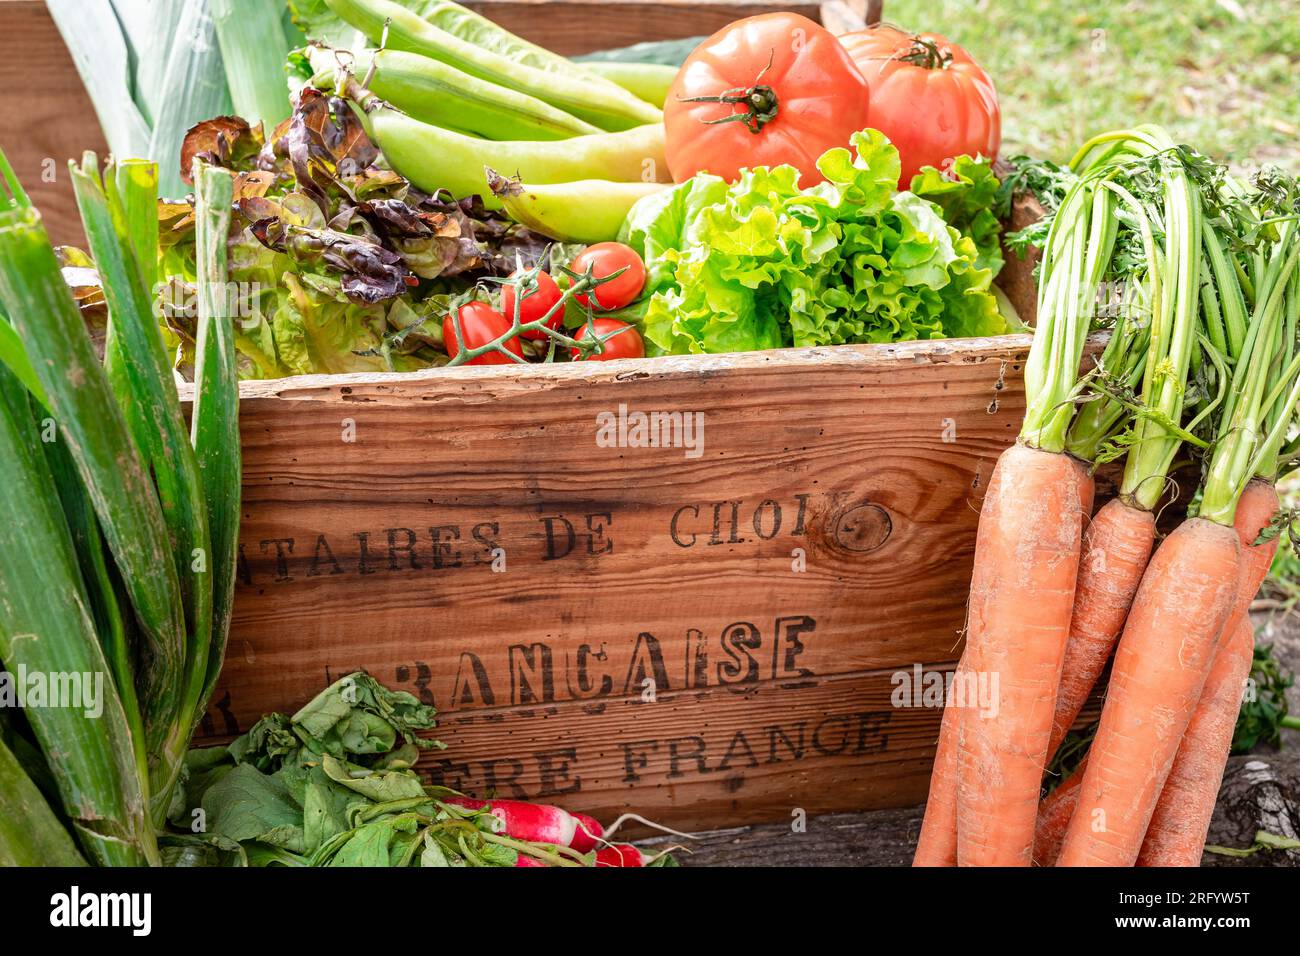 verdure fresche e colorate in una scatola di legno d'epoca "francese" che significa francese Foto Stock